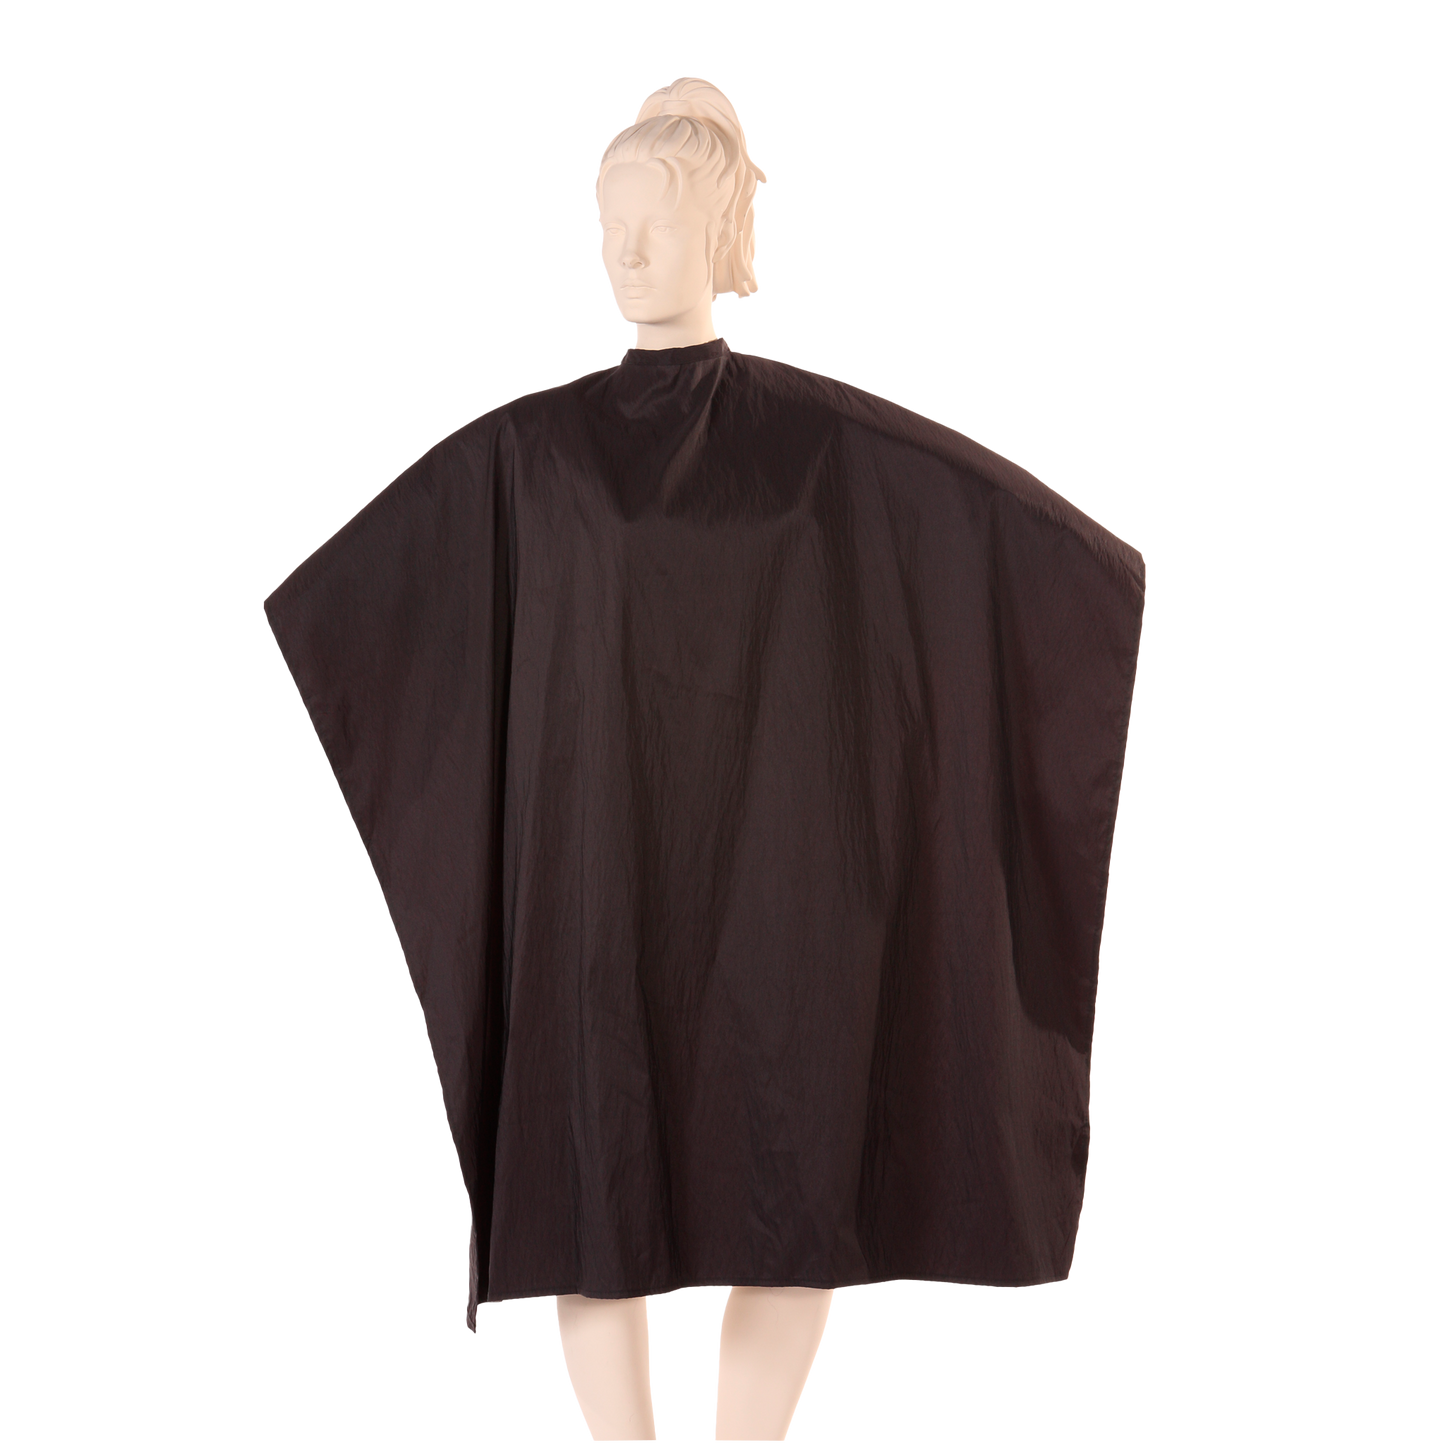 Multi-Purpose Salon Cape in Black Iridescent Silkara Fabric